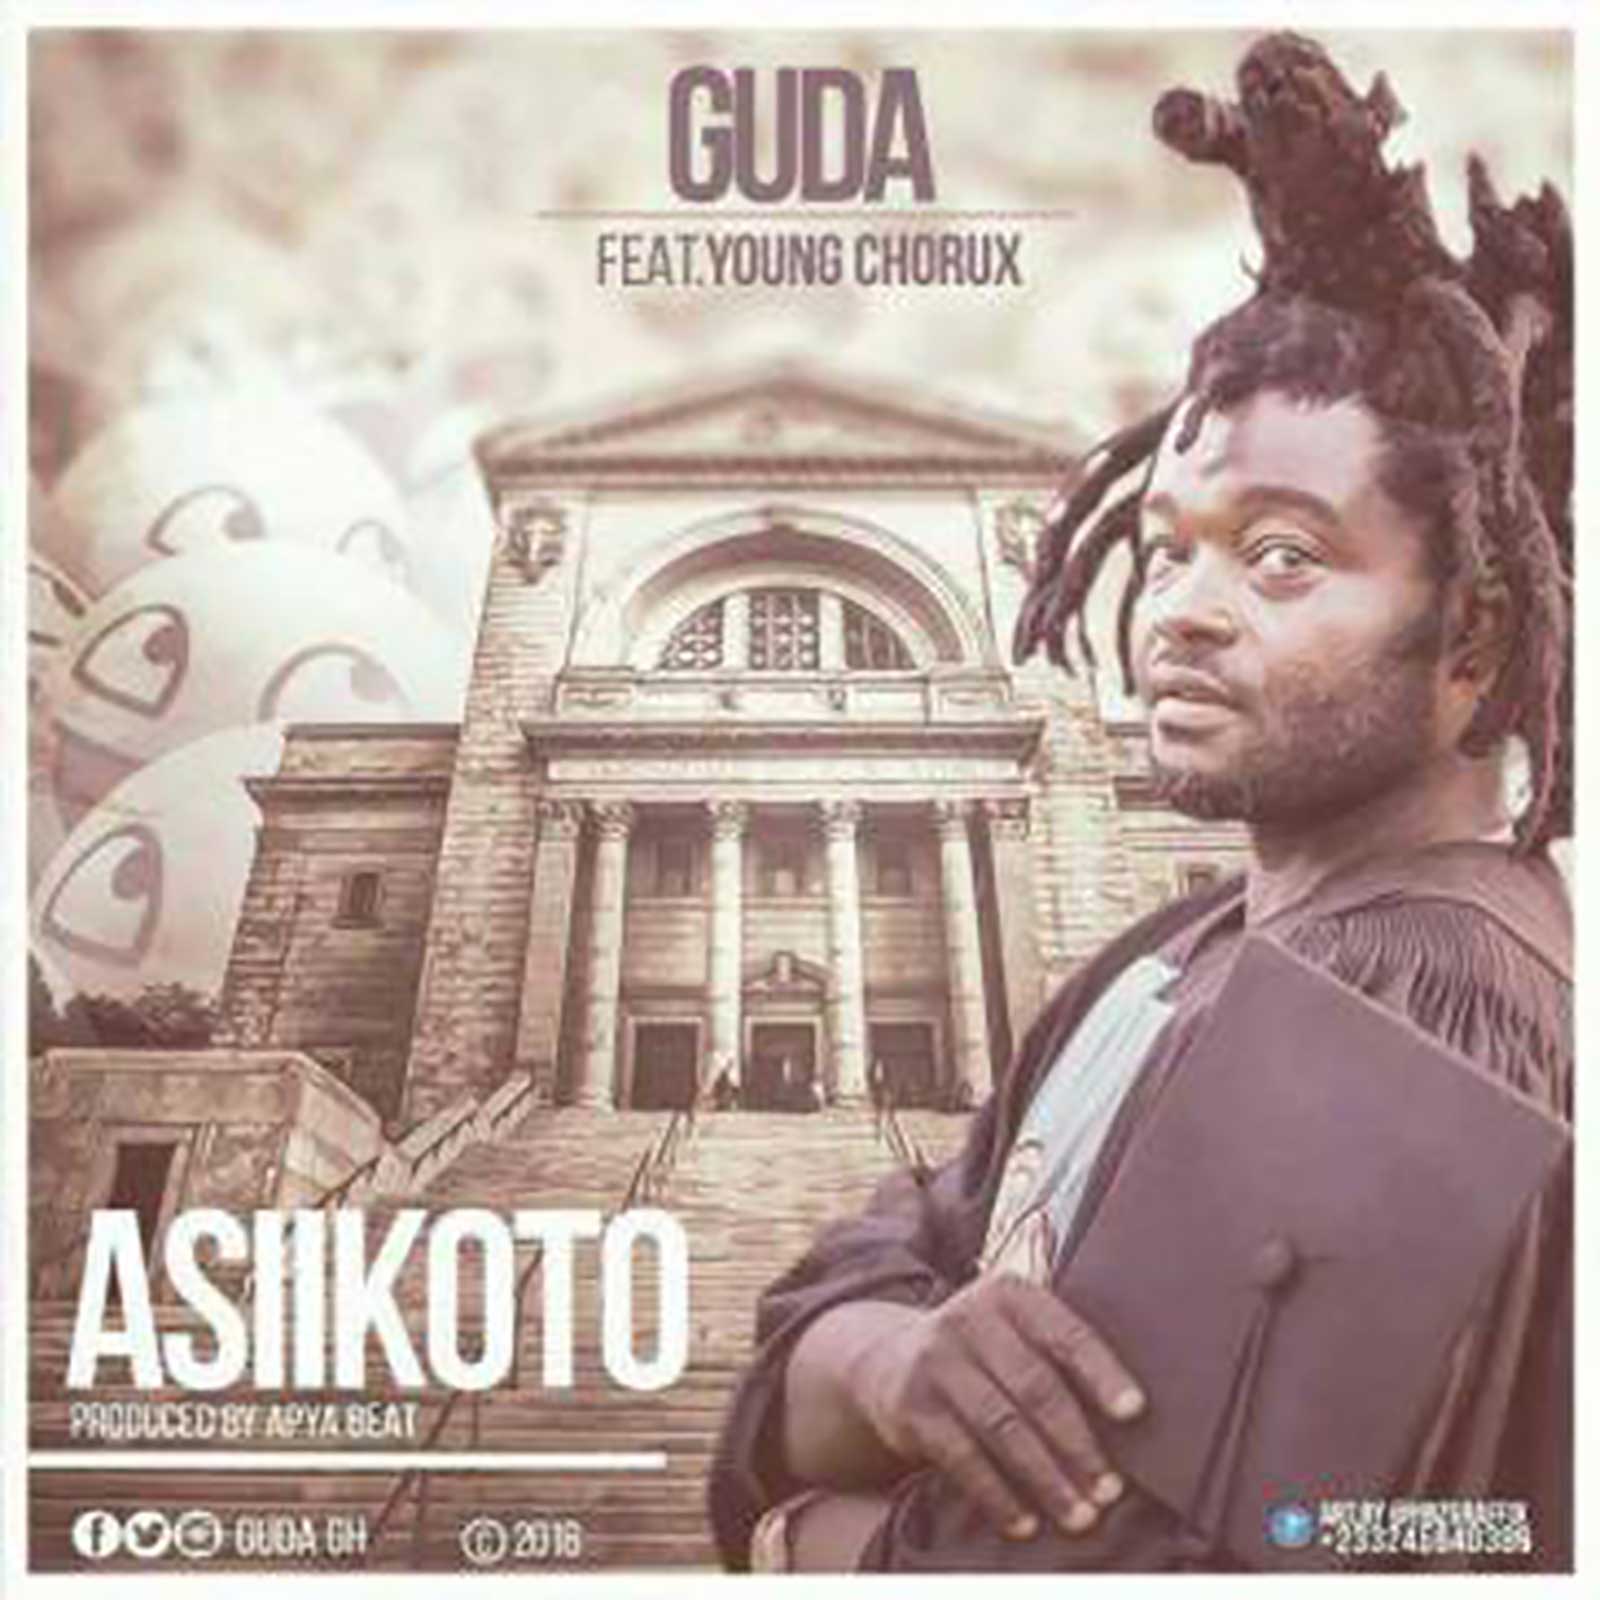 Asikoto by Guda ft. Young Chorus